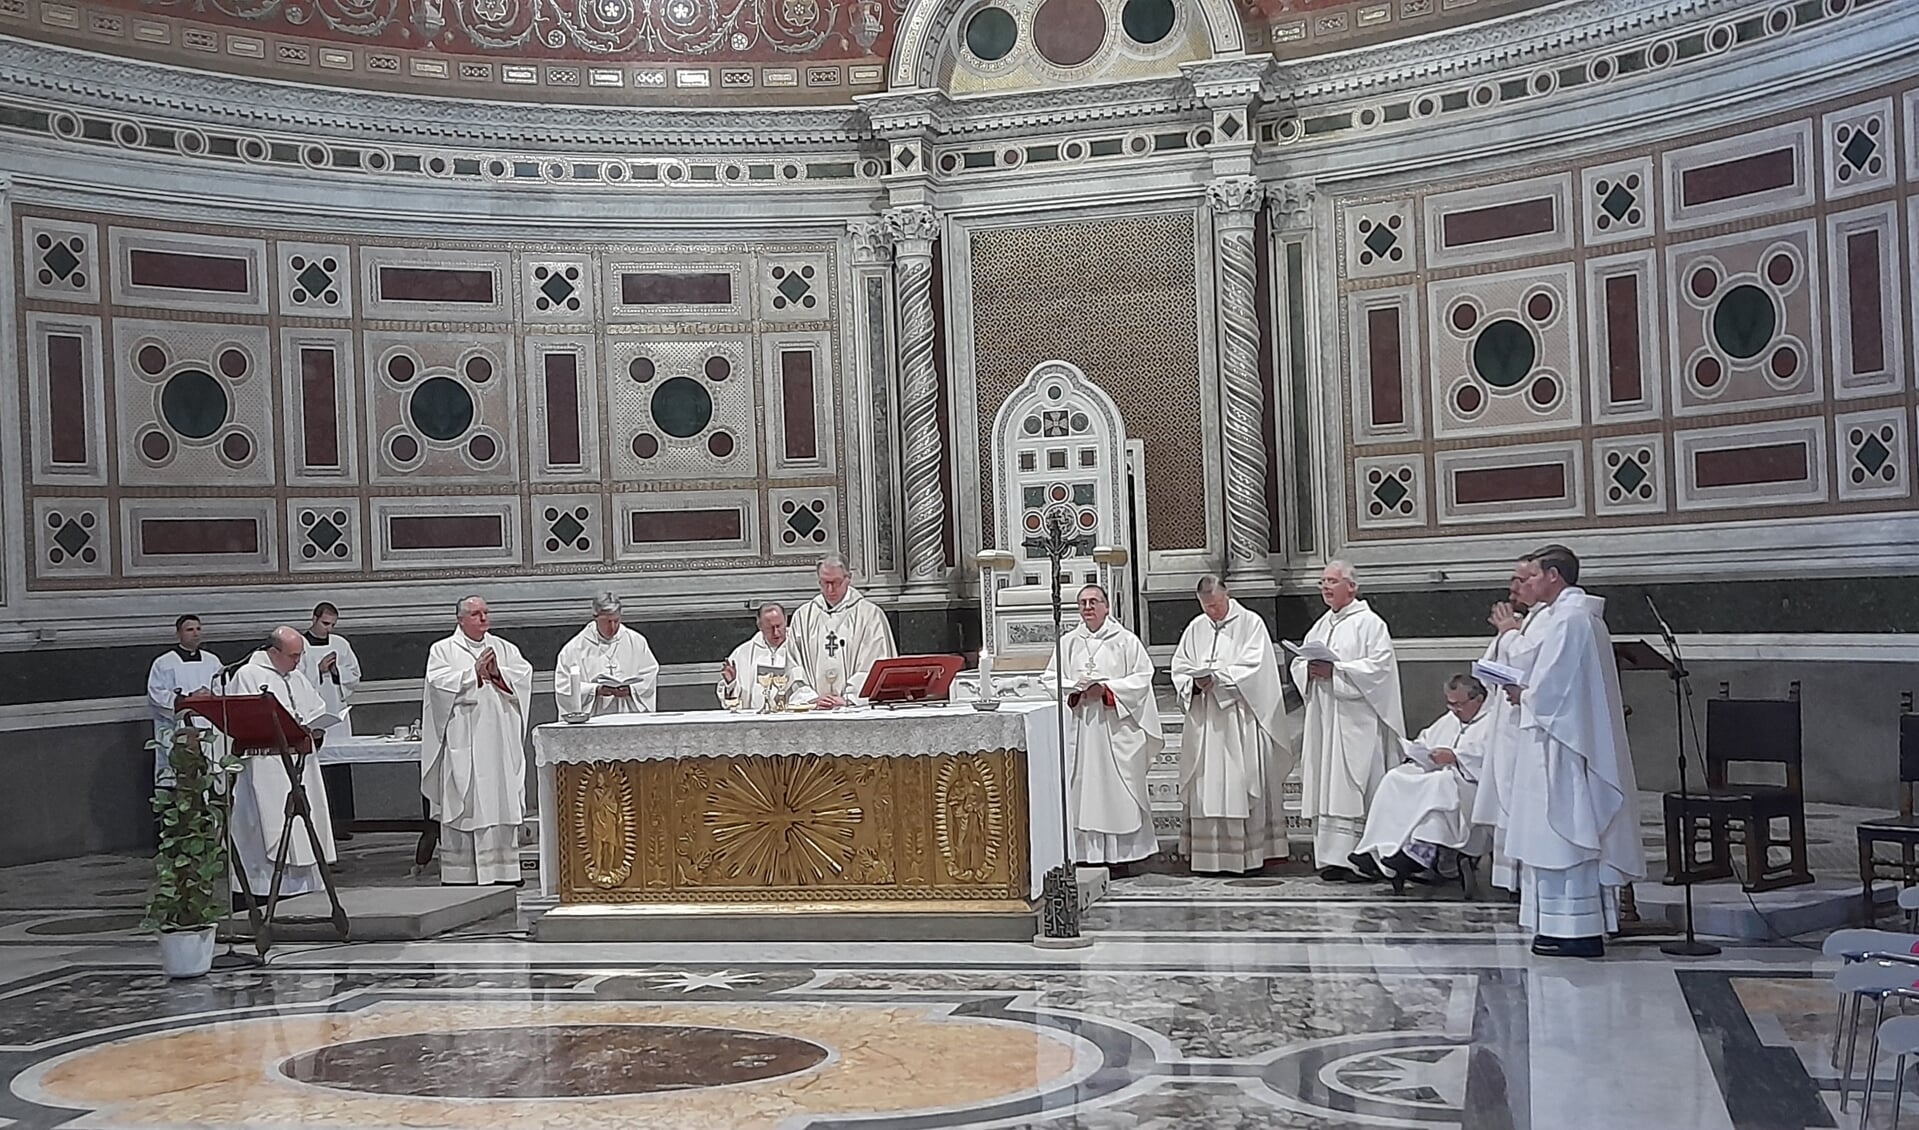 Bisschop Gerard de Korte (midden achter het altaar) met de negen in Rome aanwezige medebisschoppen, waaronder de voorzitter van de Nederlandse bisschoppenconferentie, bisschop Hans van den Hende, tweede van links en kardinaal Wim Eijk (links achter De Korte).